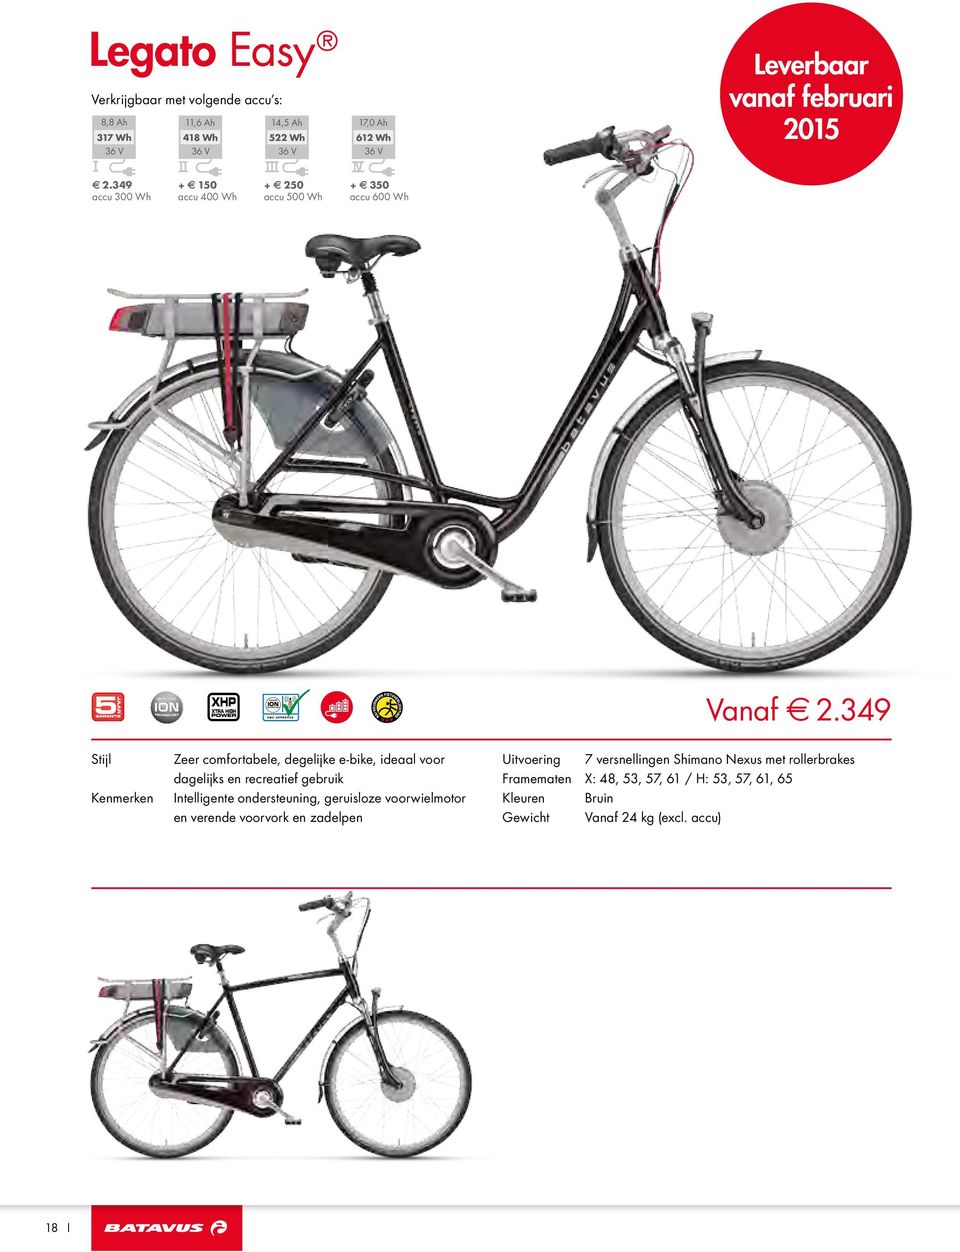 349 Stijl Kenmerken Zeer comfortabele, degelijke e-bike, ideaal voor dagelijks en recreatief gebruik Intelligente ondersteuning, geruisloze